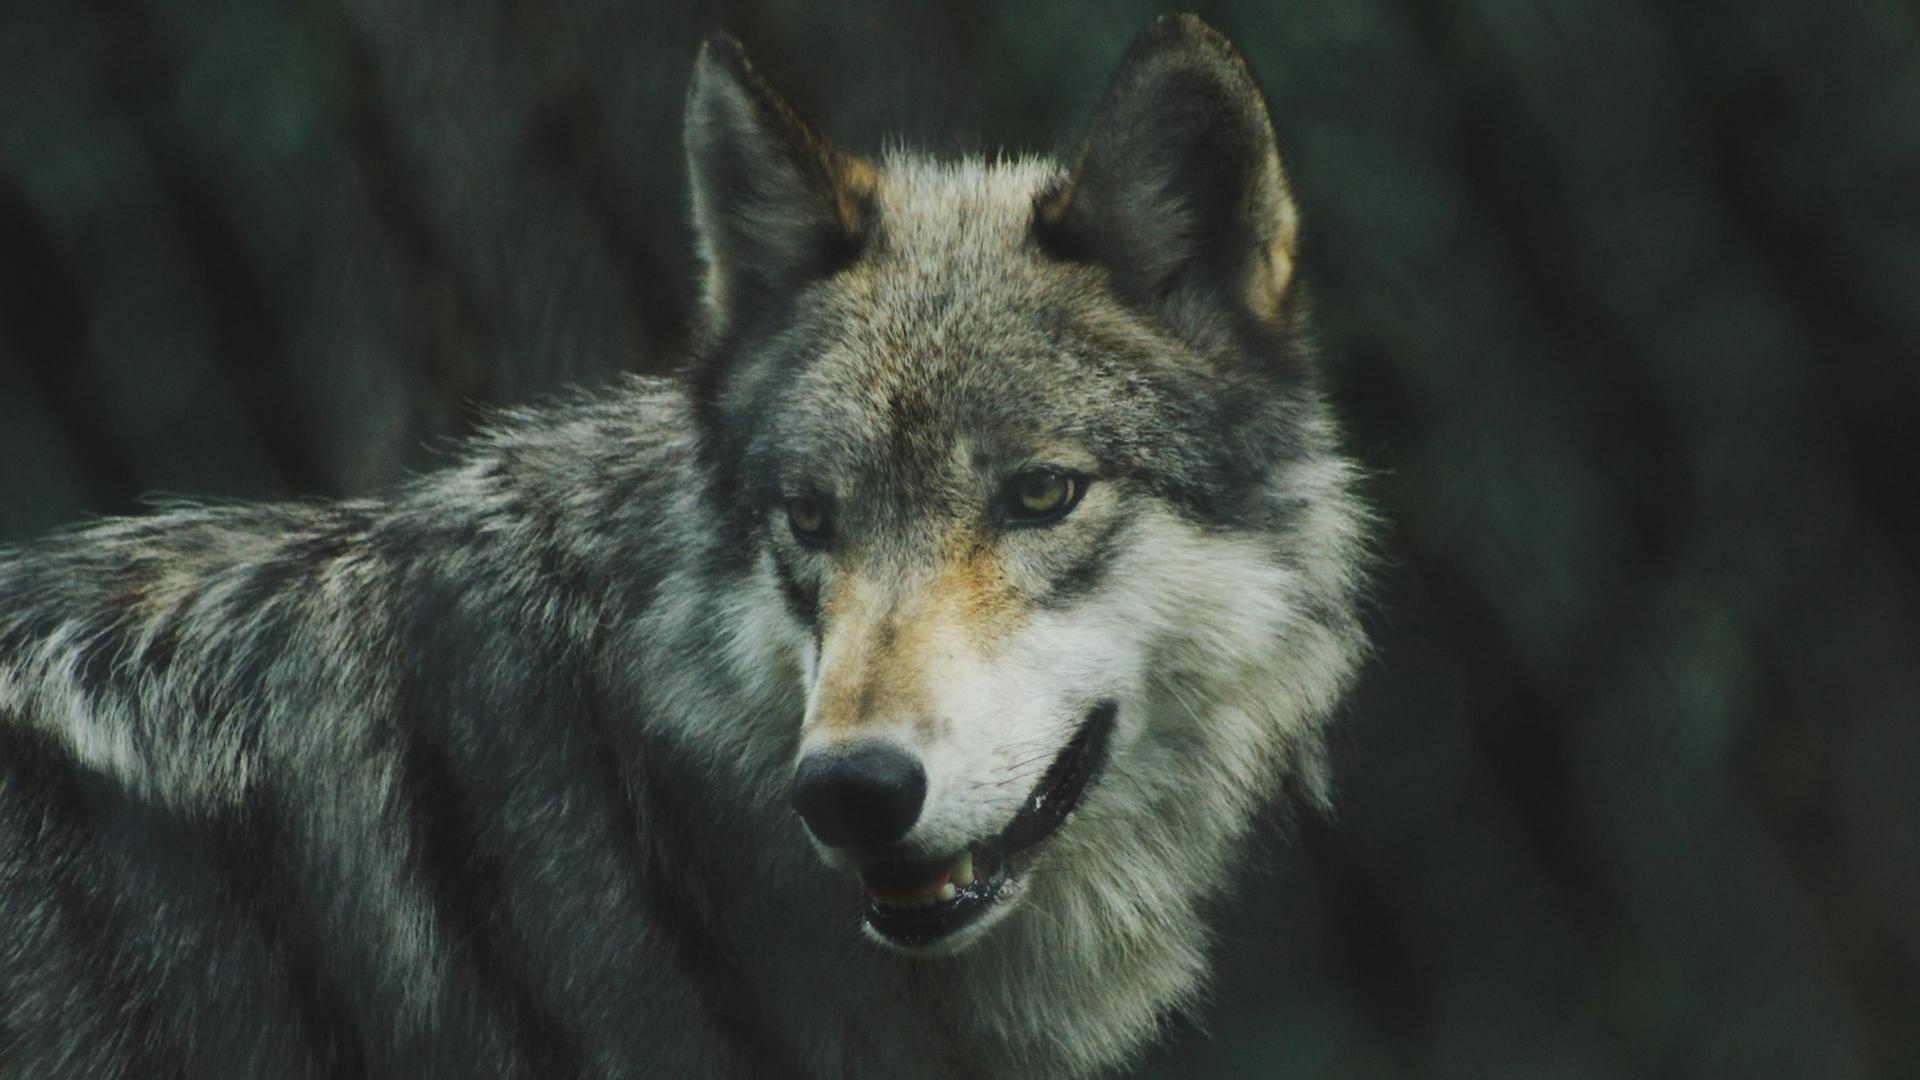 Wölfe ziehen durch eine Welt im Ausnahmezustand, und es ist nicht sicher, ob der Wolf einer ist, der in den Straßen mordet.